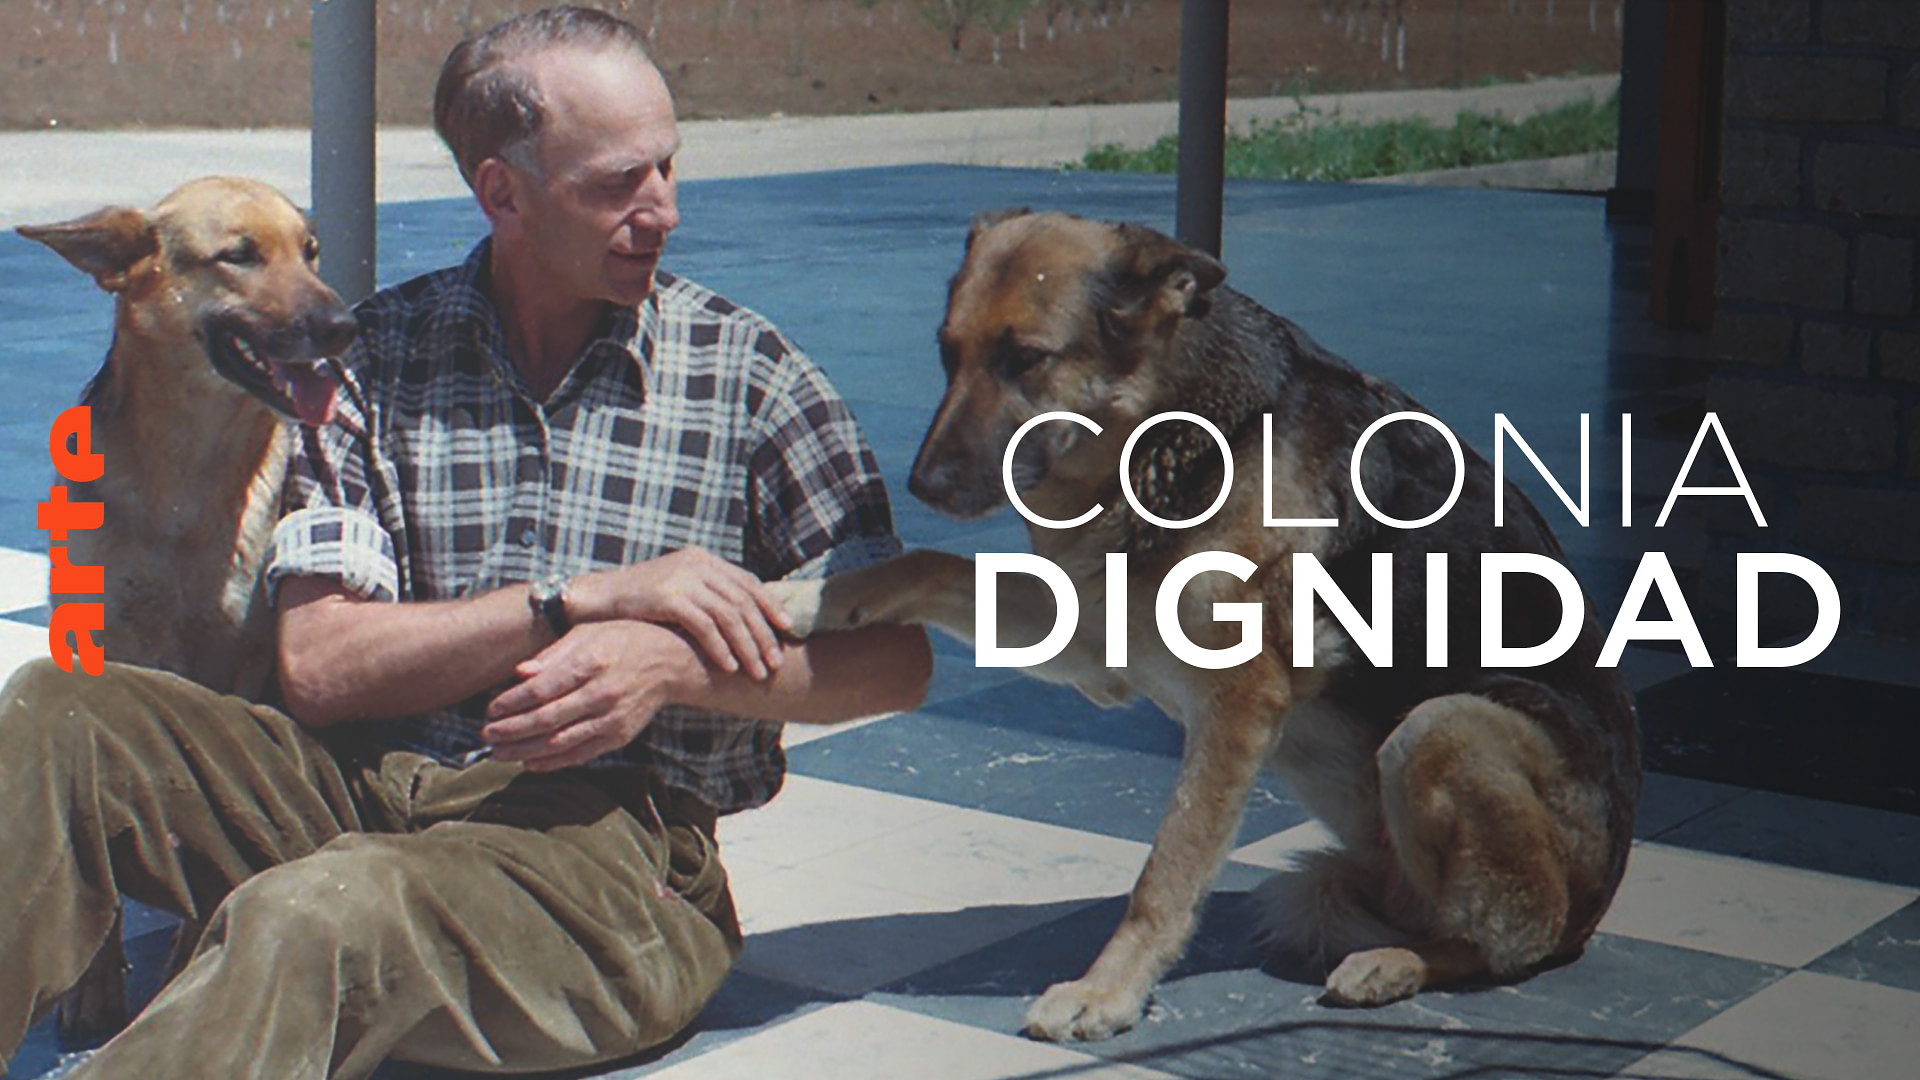 Colonia Dignidad - L'enfer de la terre promise - Regarder le documentaire complet | ARTE